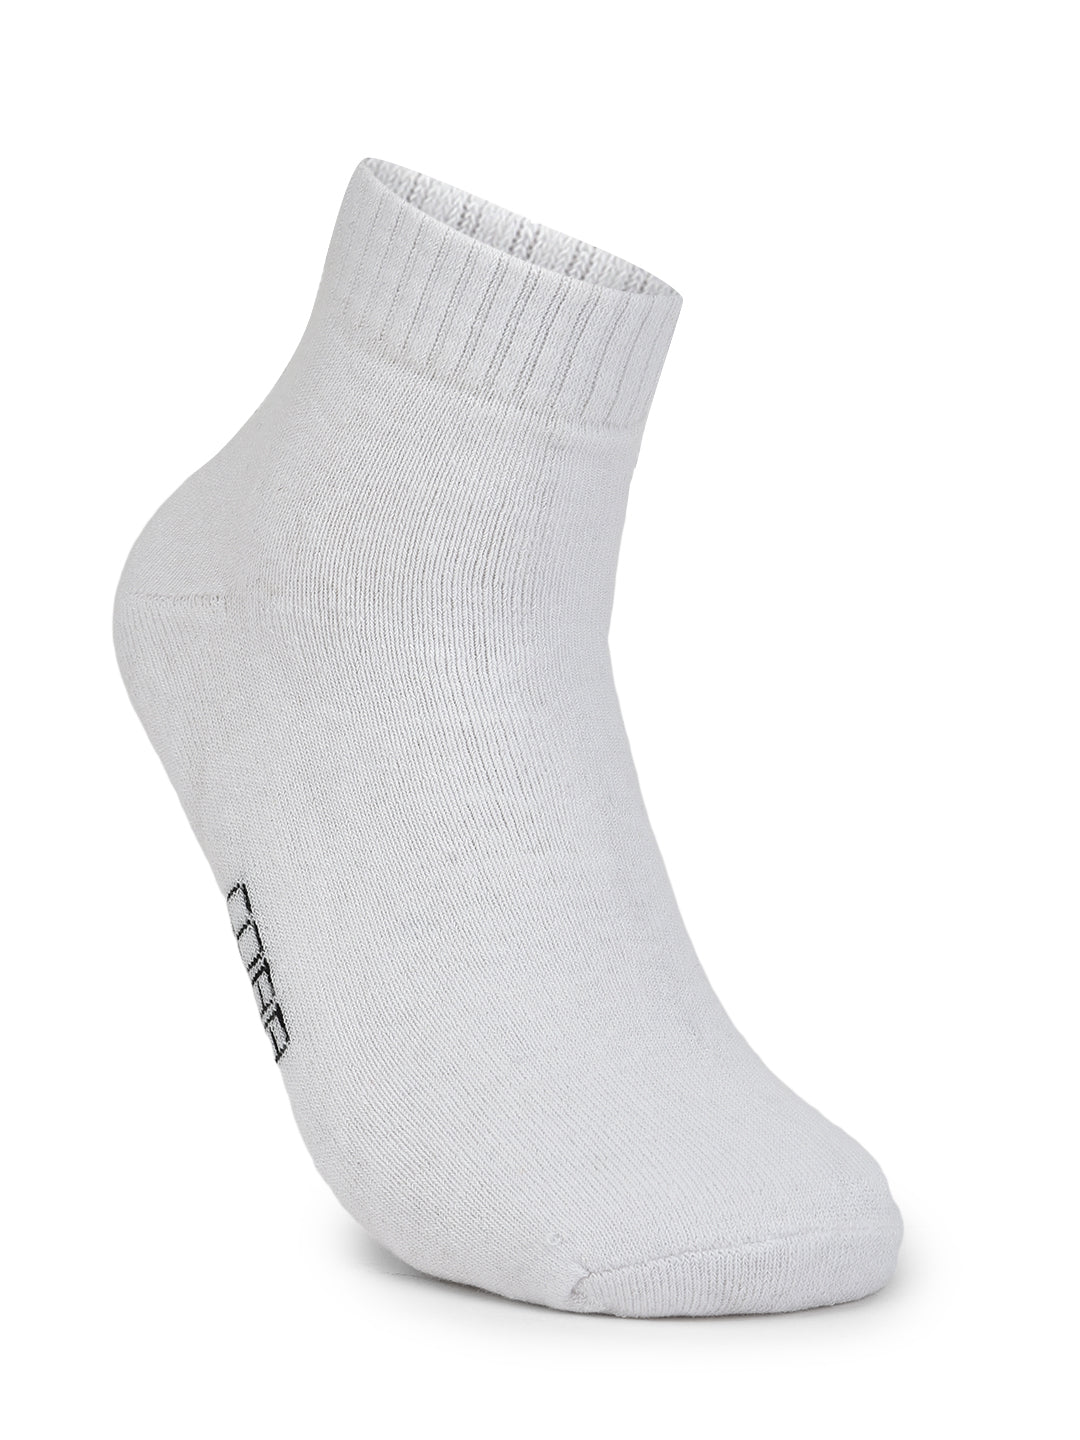 Cobb White Half Ankle Socks White 1